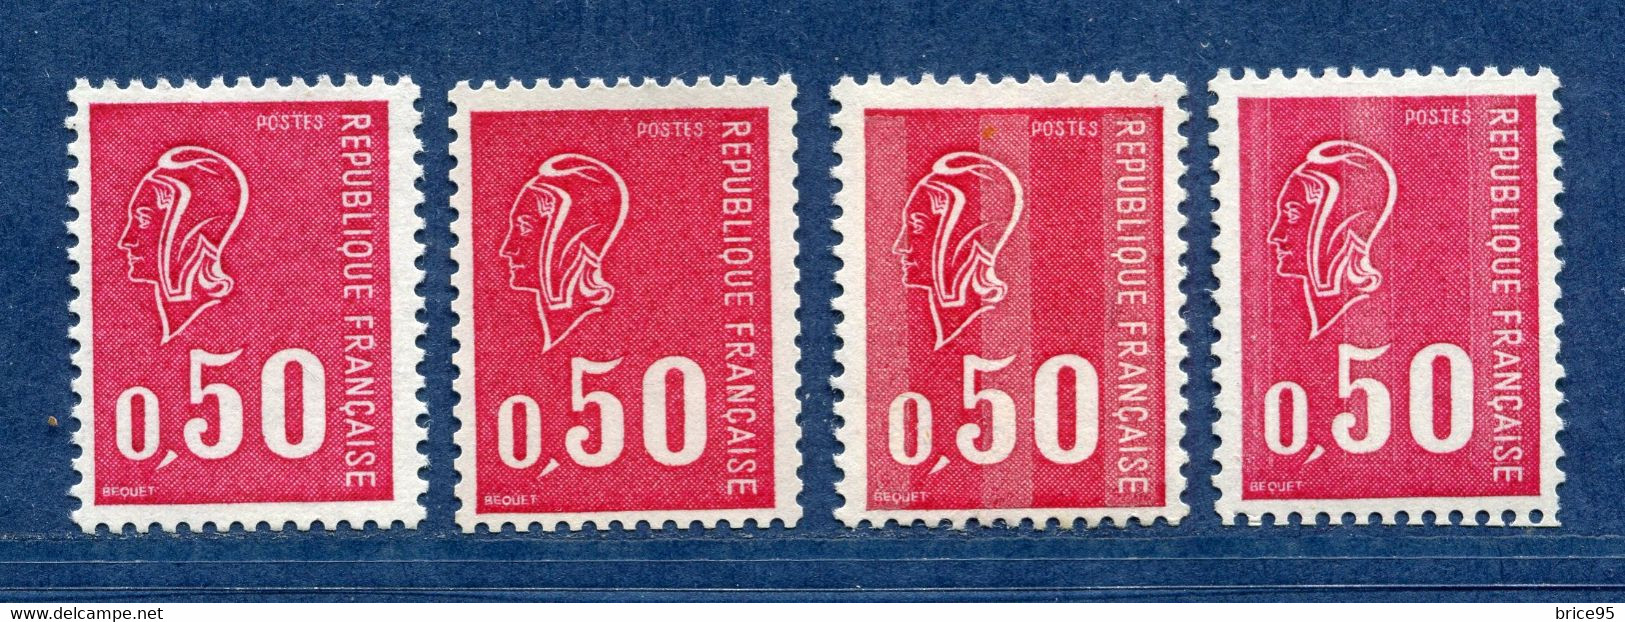 ⭐ France - Variété - YT N° 1664 B - Numéro Rouge - Couleurs - Pétouilles - Neuf Sans Charnière - 1971 ⭐ - Neufs